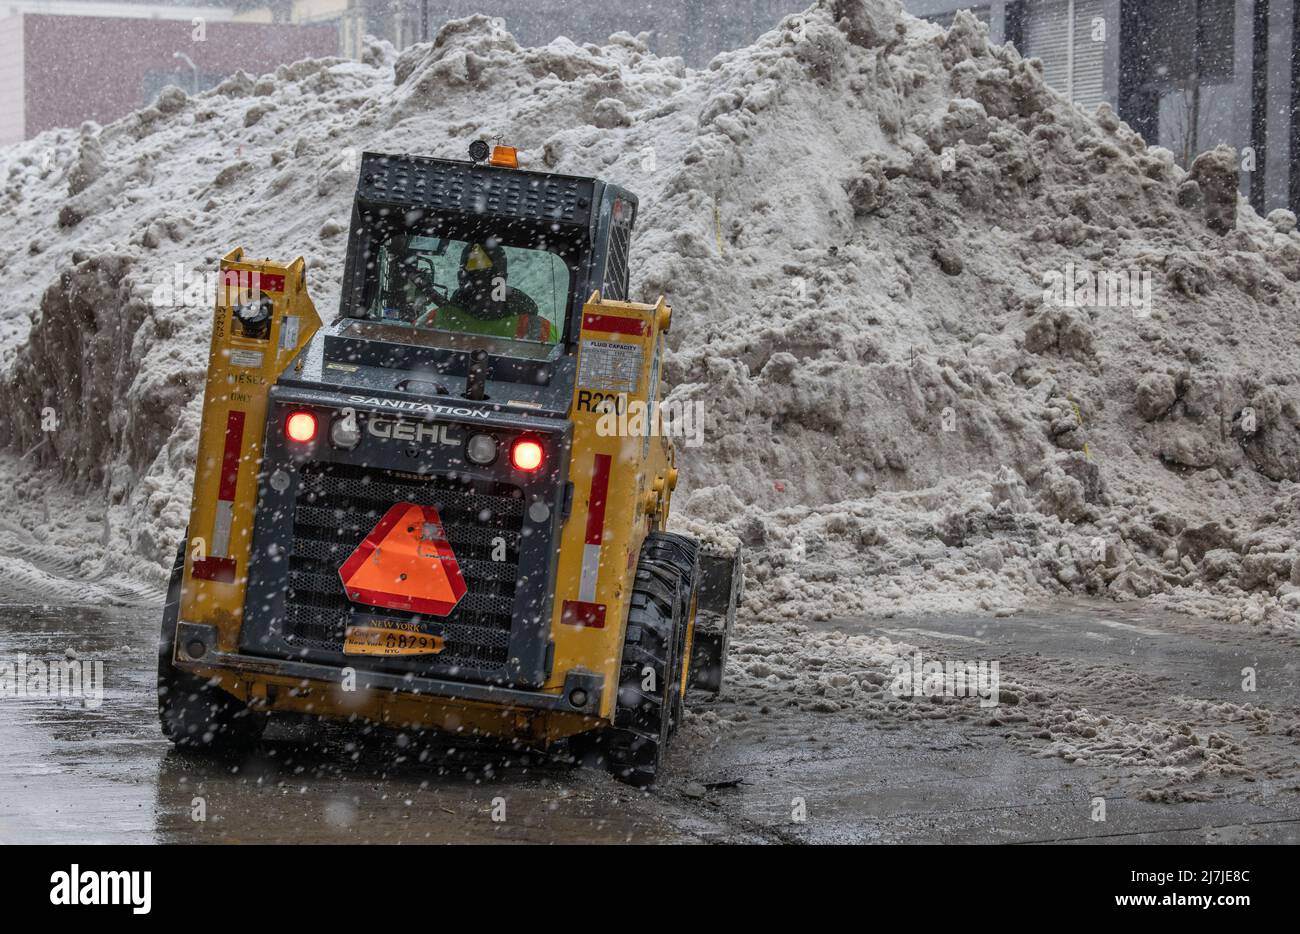 NEW YORK, N.Y. – 7. Februar 2021: Ein Fahrer fährt ein Fahrzeug der New York City Sanitation Department in der Nähe einer Schneelage in Lower Manhattan. Stockfoto